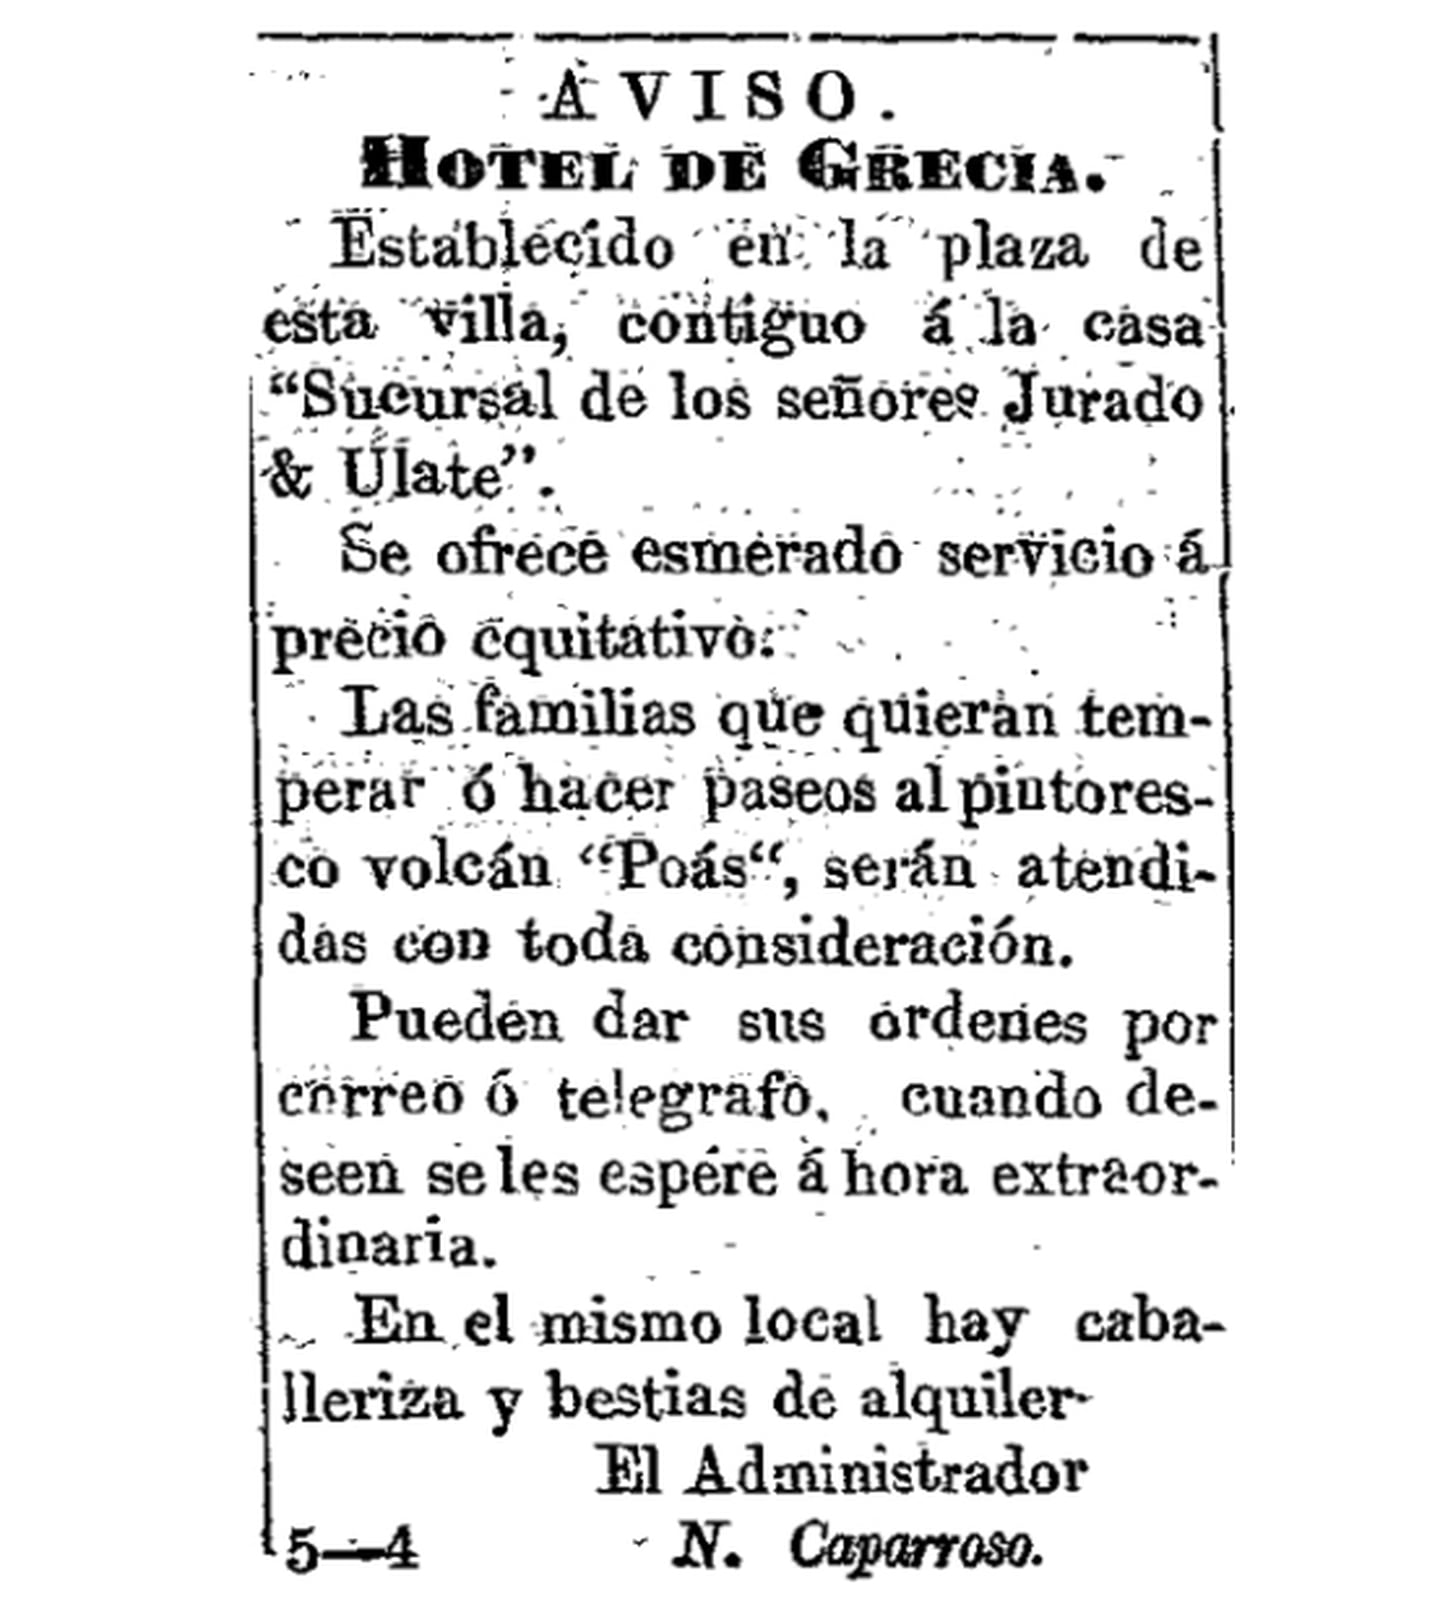 A finales del siglo XIX ya se publicaban anuncios para llegar a caballo al volcán Poás, no existía caminos y había que hacerlo a través de montañas. Repodrucción tomada de Caparroso (1892), suministrada por Mauricio Mora.